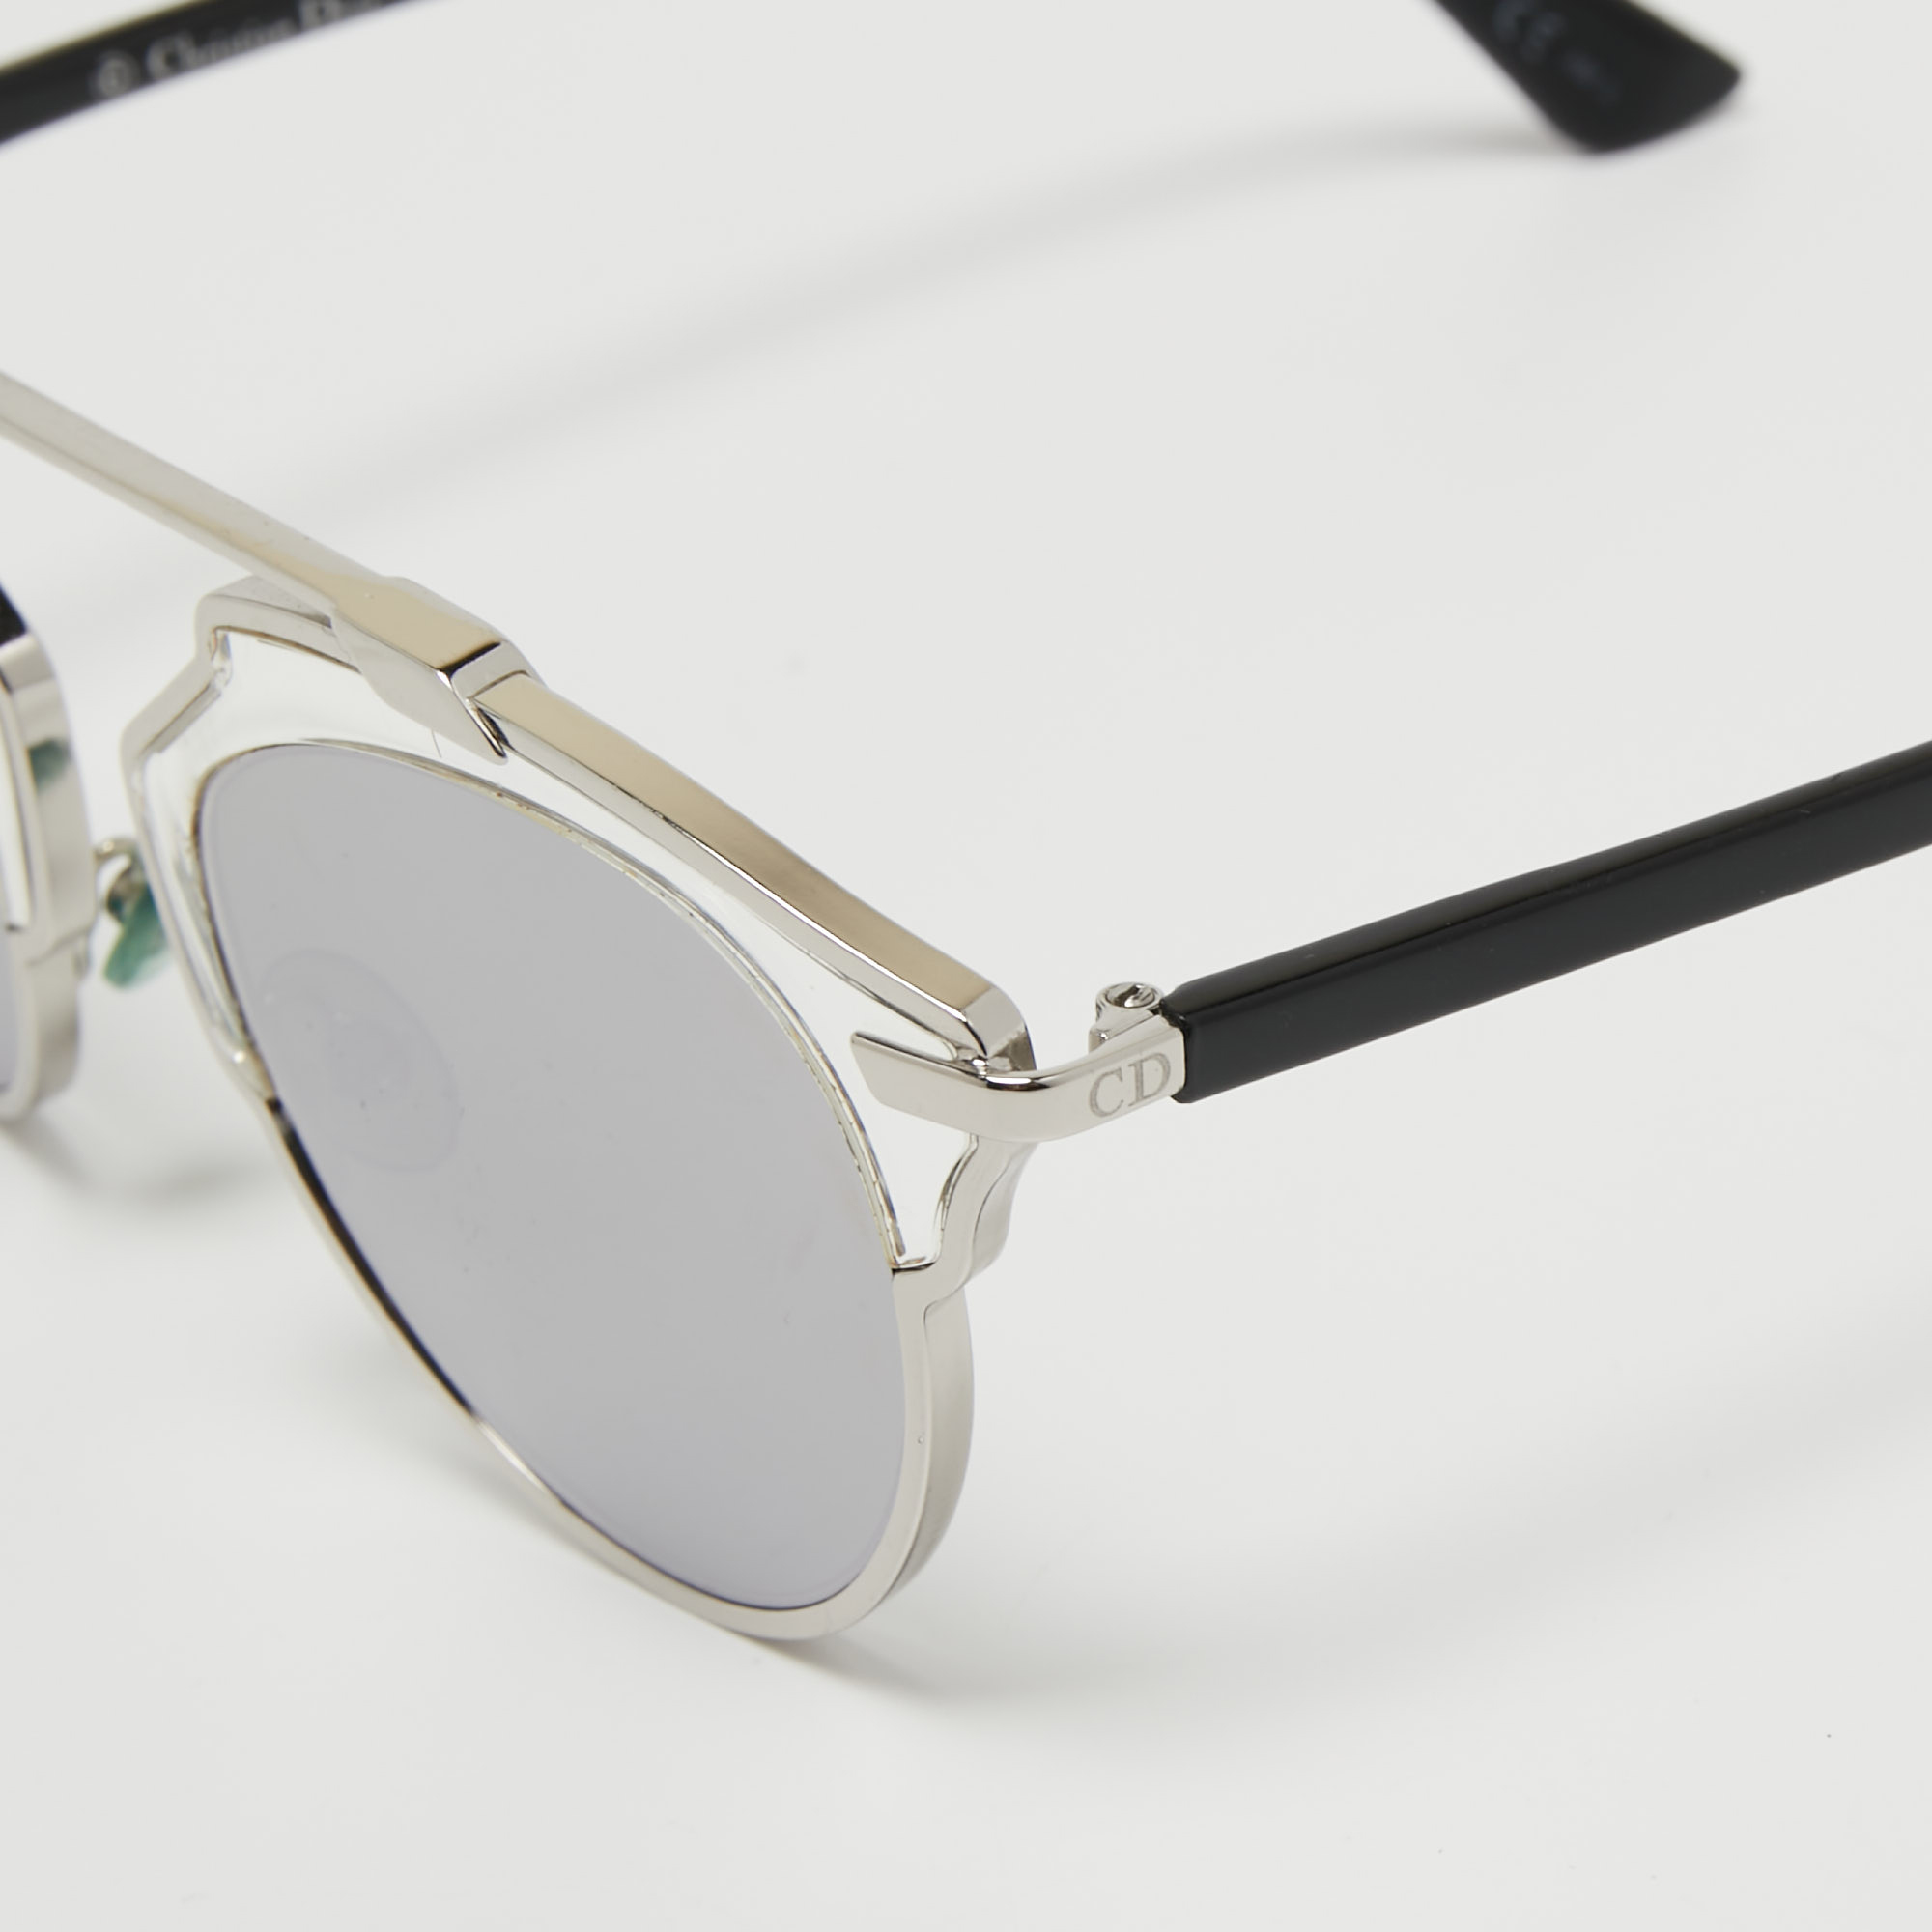 

Dior Silver Tone/ Grey Mirrored APPDC DiorSoReal Aviator Sunglasses